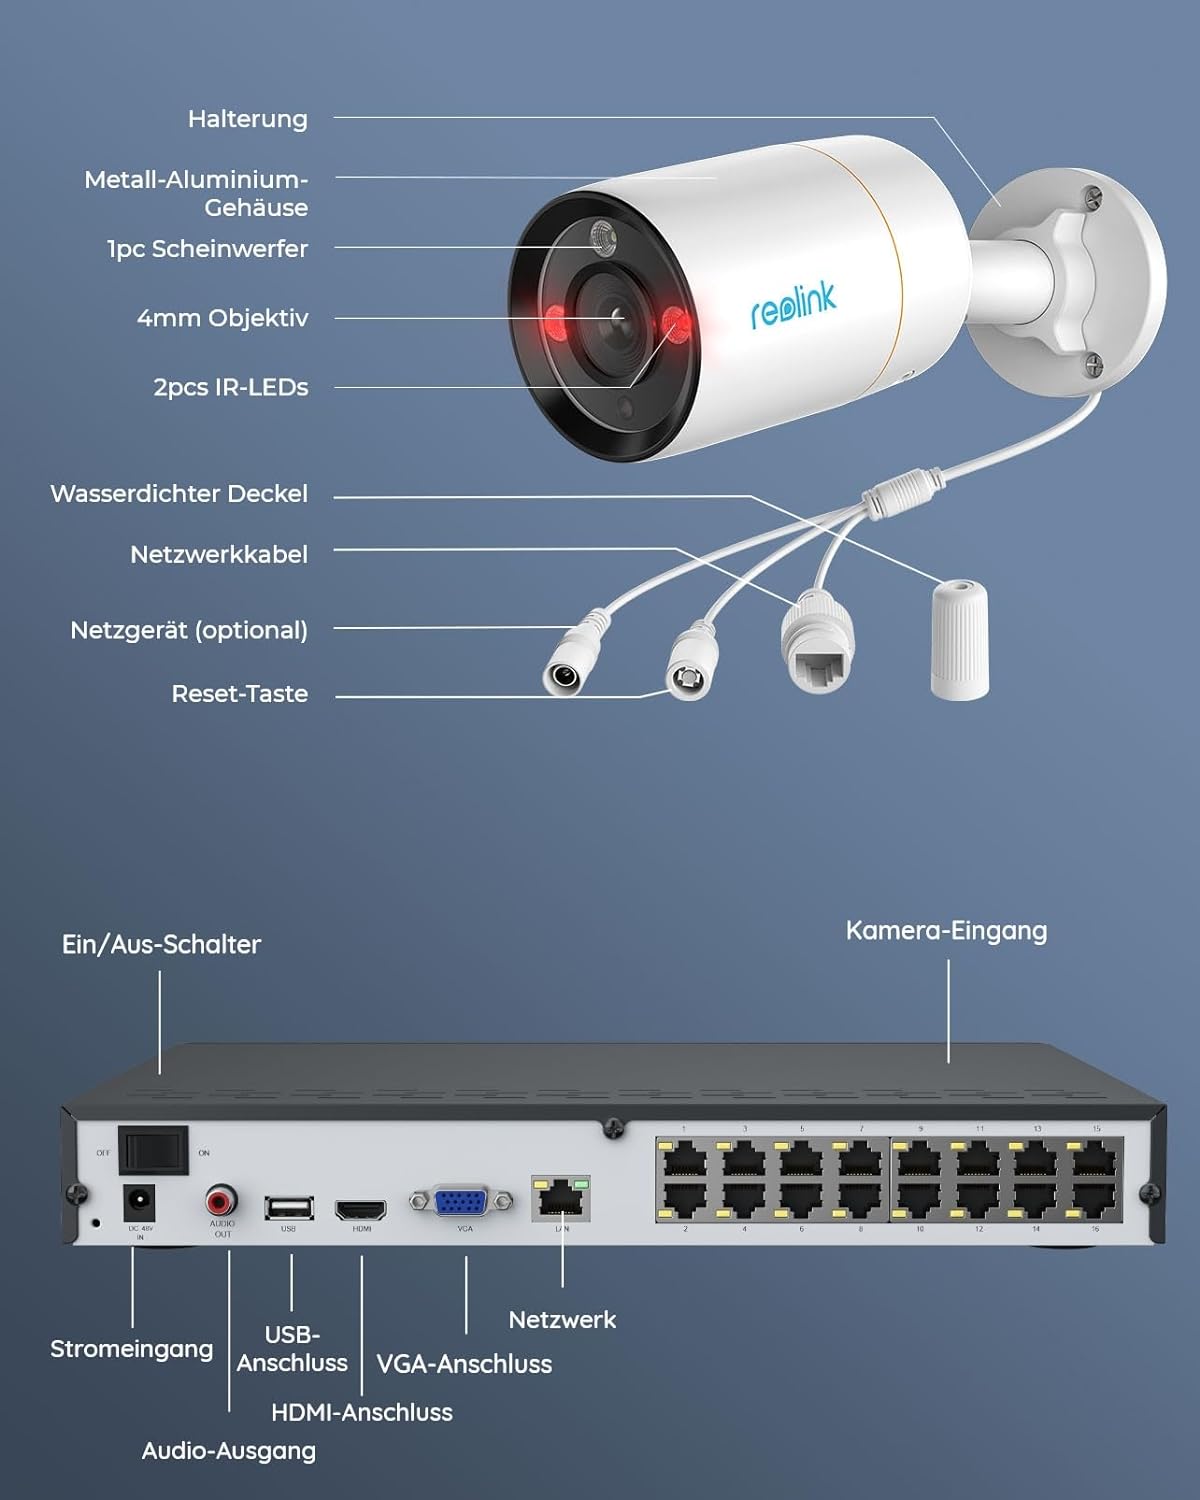 Reolink 12 MP Outdoor-Überwachungskamera-Set, 8 x PoE-IP-Kamera-Überwachung im Freien, Scheinwerfer, Personen-/Fahrzeugerkennung, 2-Wege-Audio, 24/7 Farb-/IR-Nachtsicht, 16 CH 4 TB HDD NVR, RLK16-1200B8-A